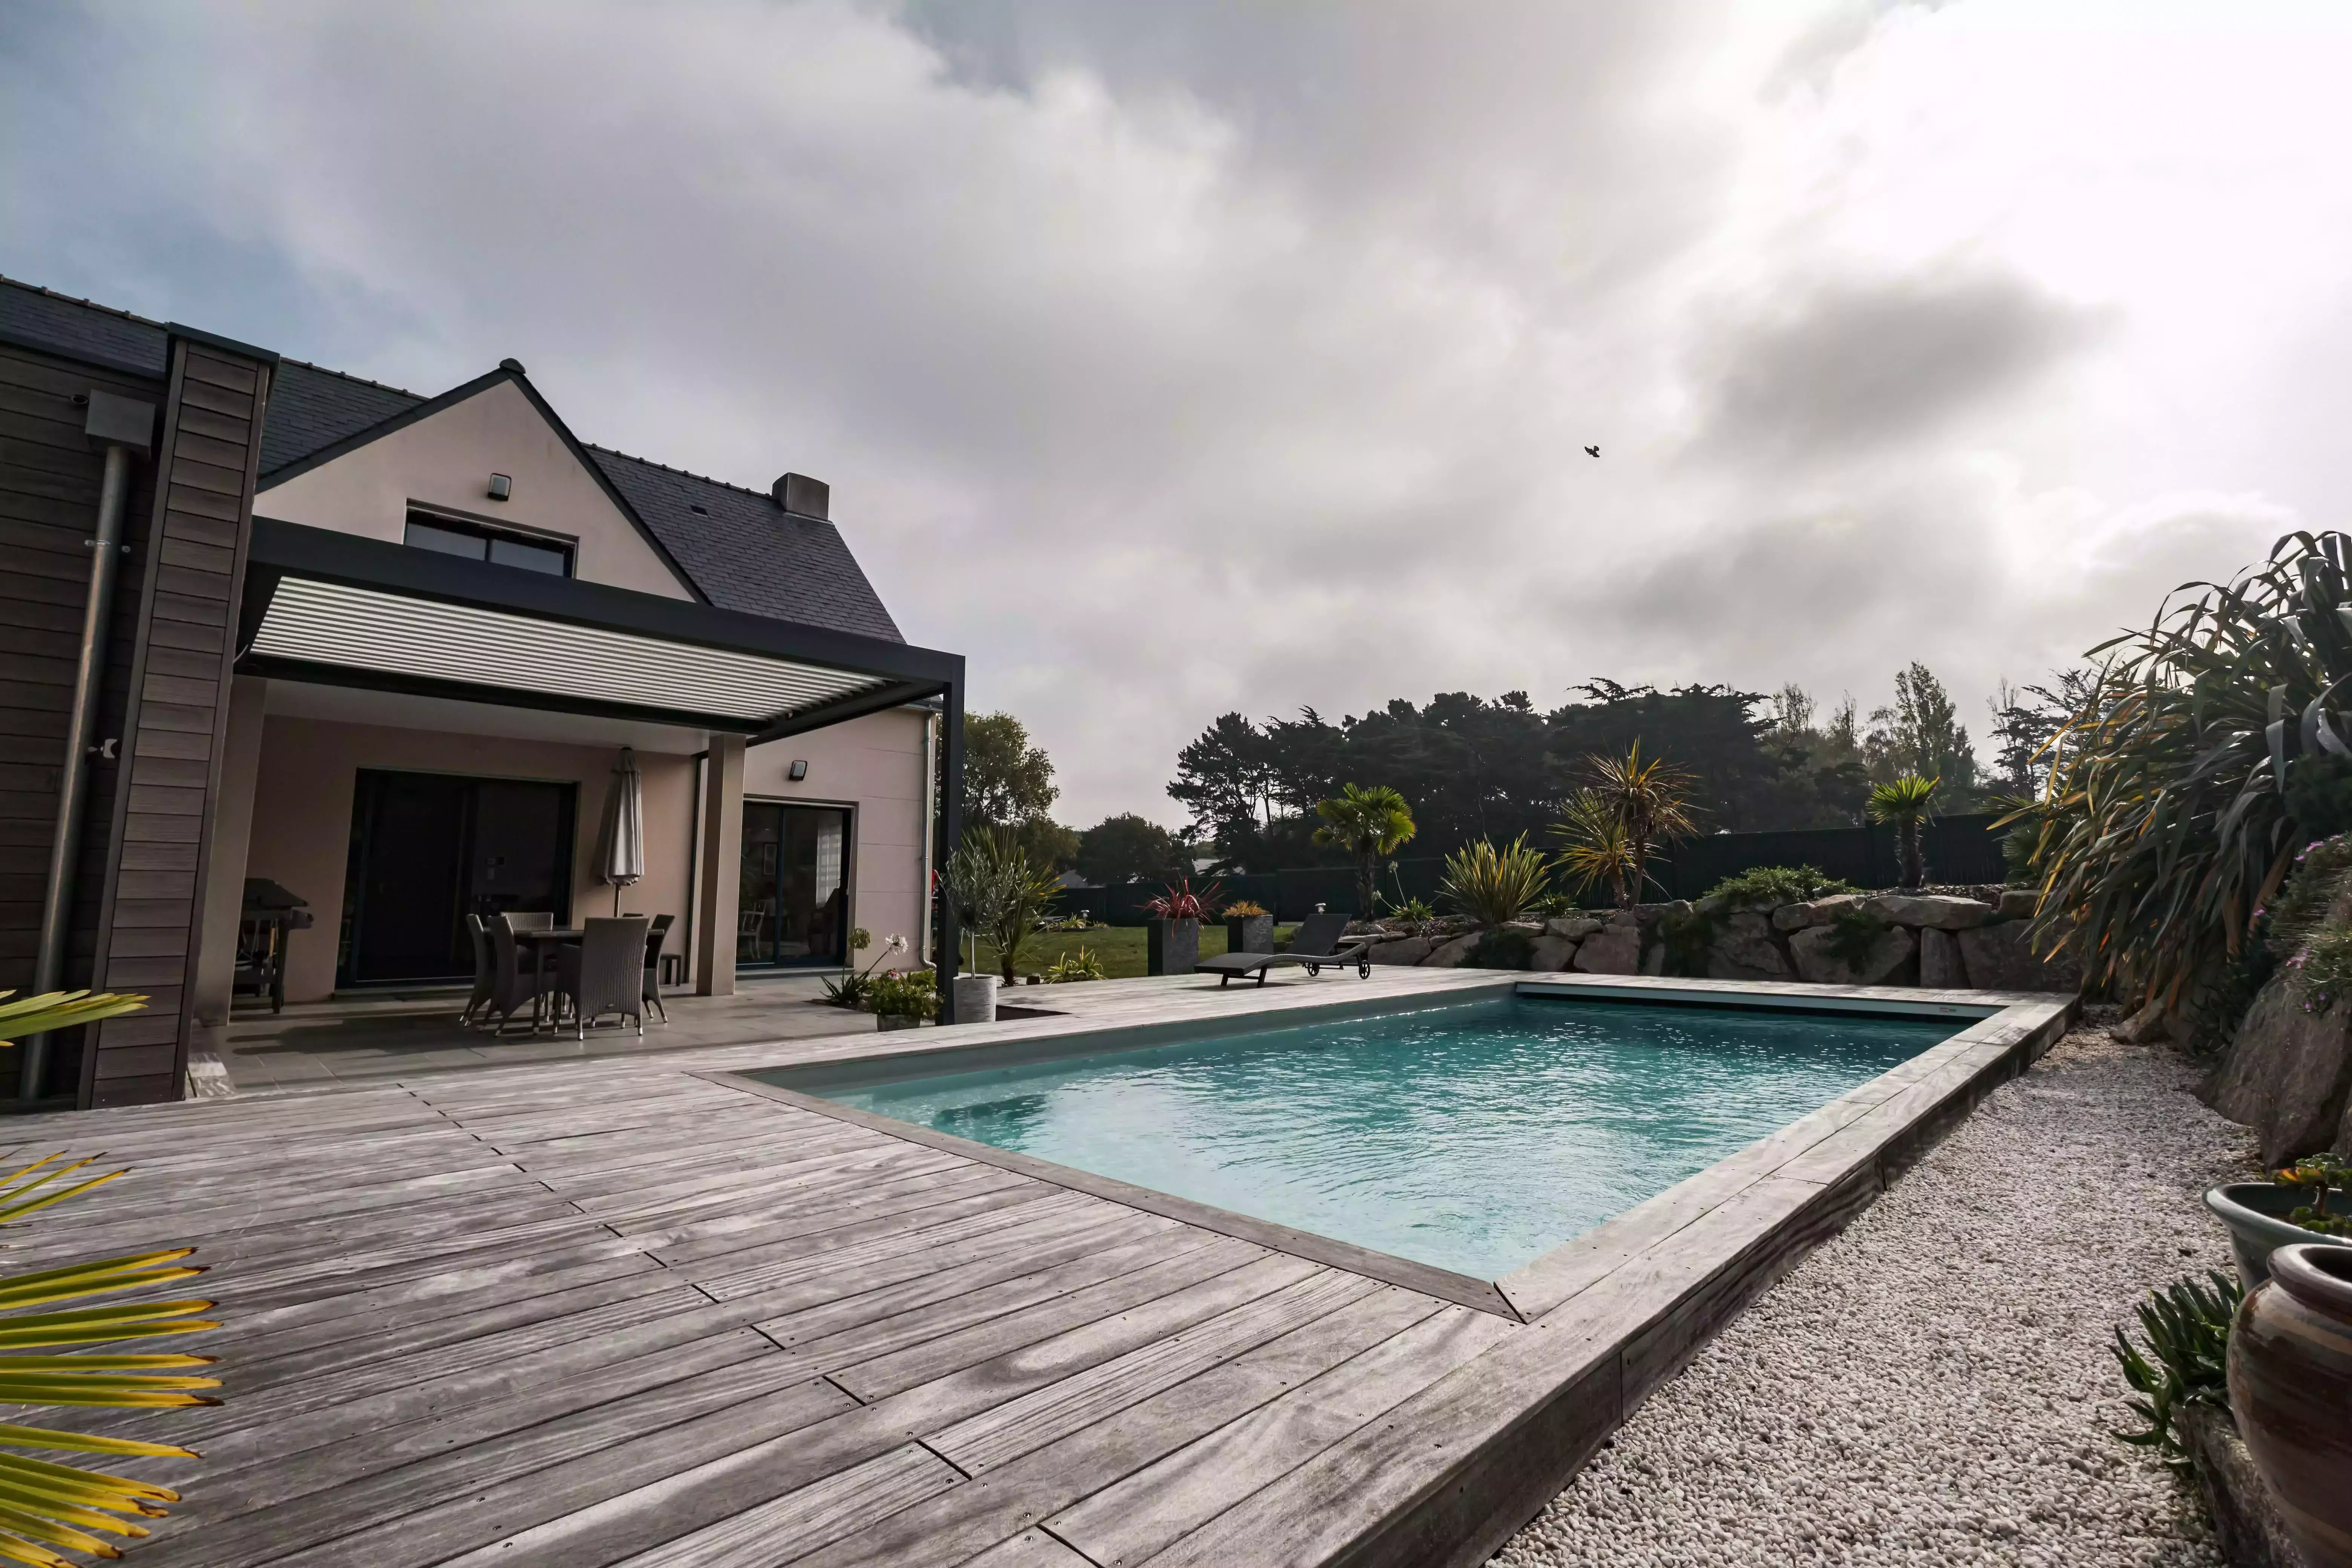 Une architecture moderne qui priorise la piscine, unie à un décor rocheux grâce à une terrasse, le tout agrémenté de verdure exotique.